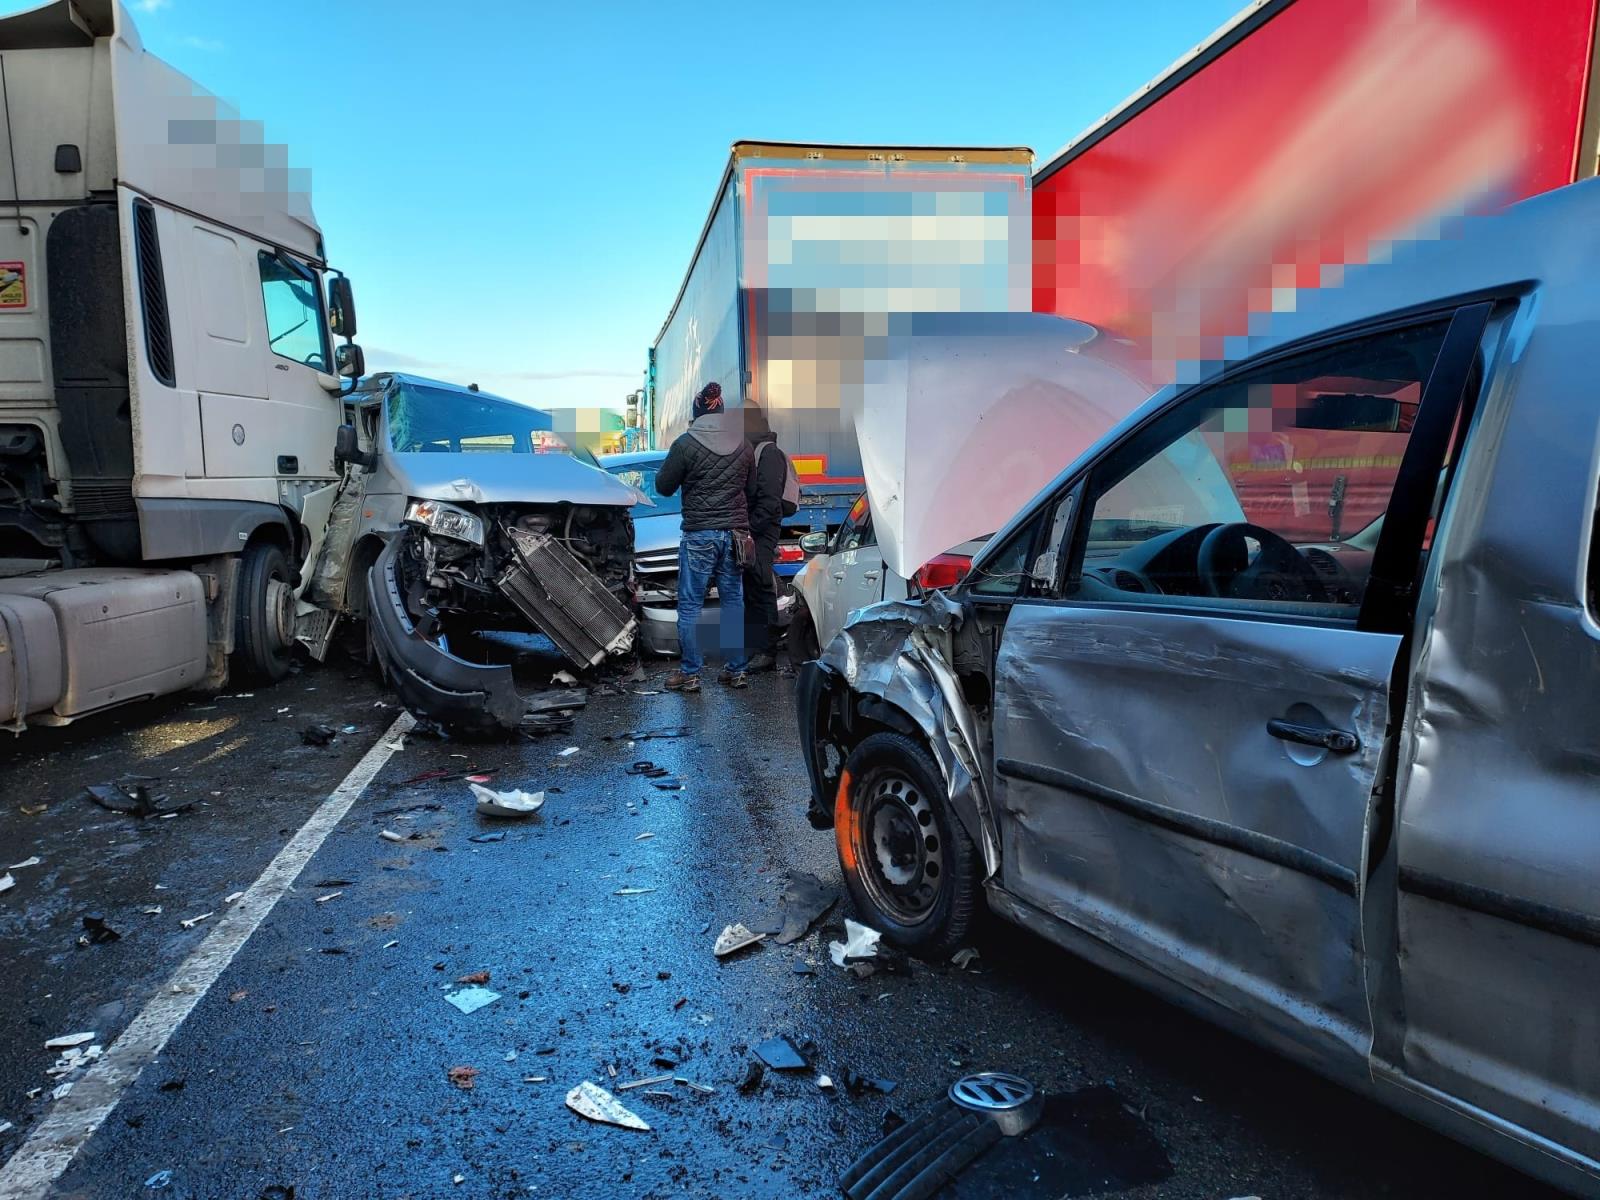 007 - Hromadná dopravní nehoda na dálnici D5.jpg